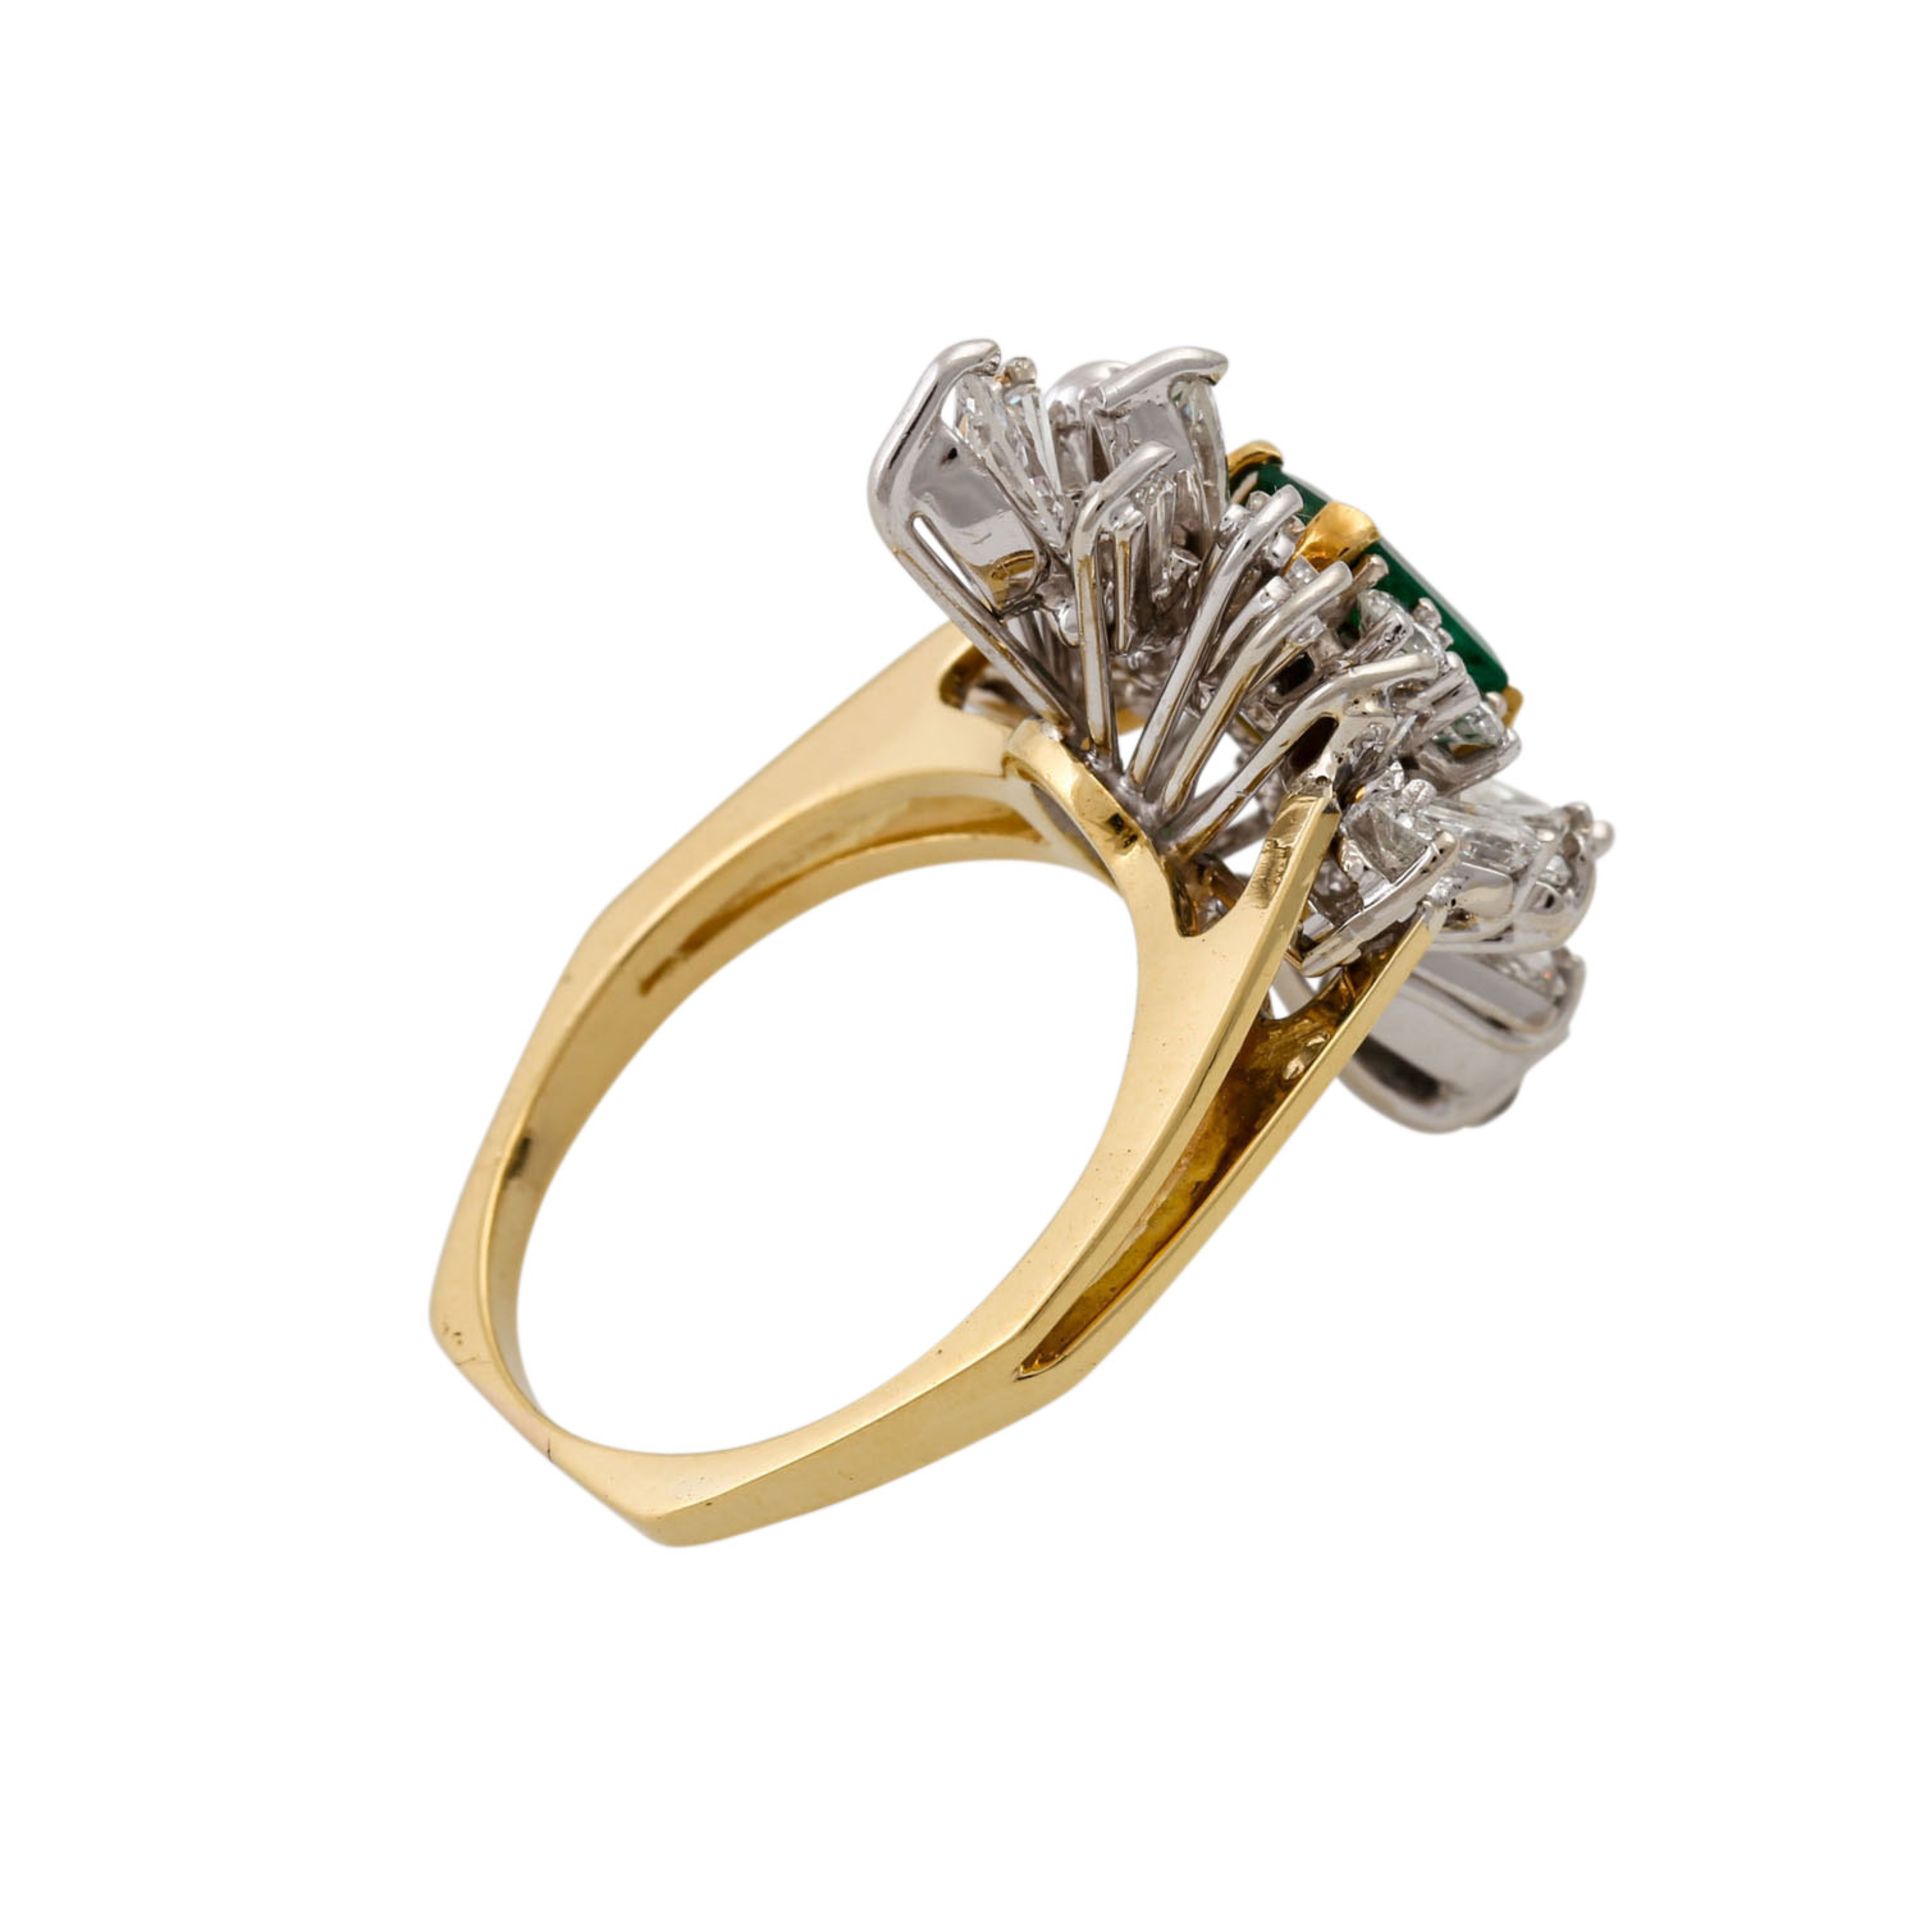 Ring mit Smaragd und Diamanten zus. ca. 1 ct,gute Farbe u. Reinheit, GG/WG 18K, 7,4 gr - Bild 3 aus 4